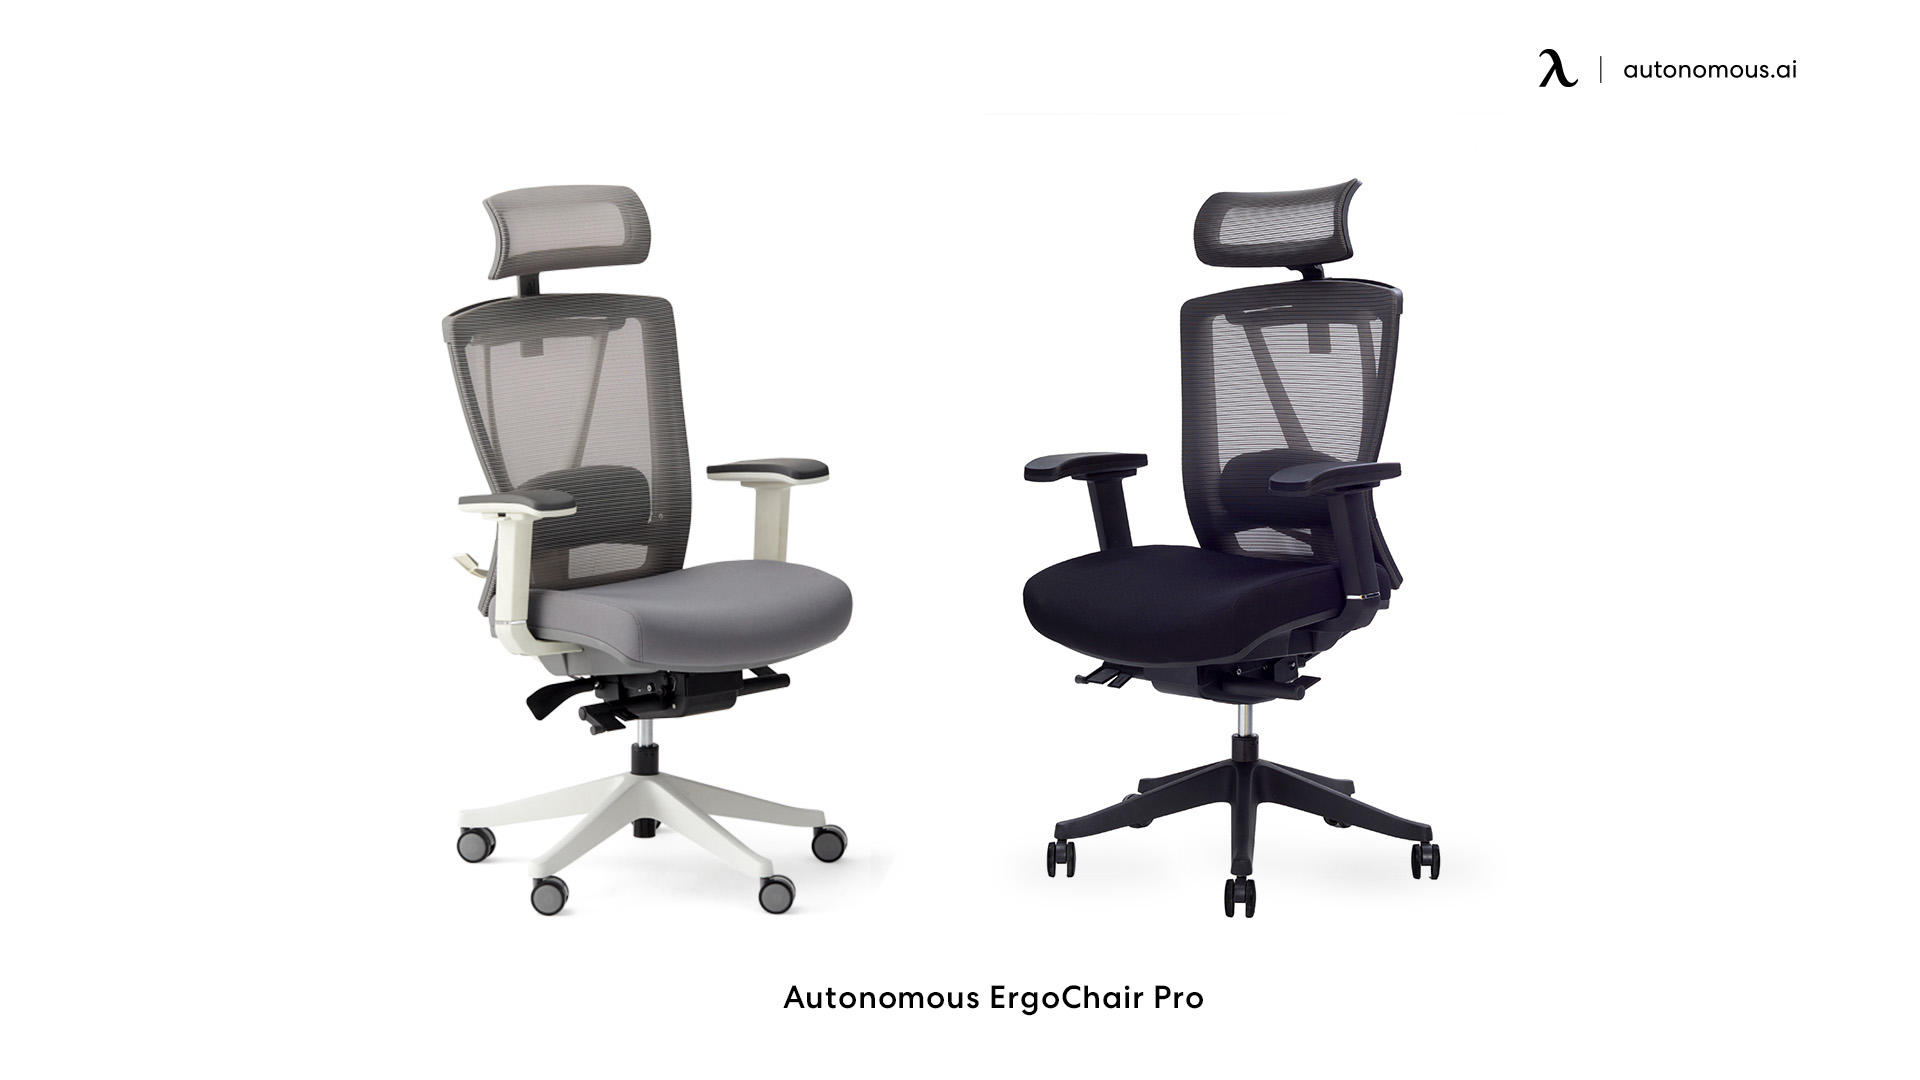 ErgoChair Pro modern office chair